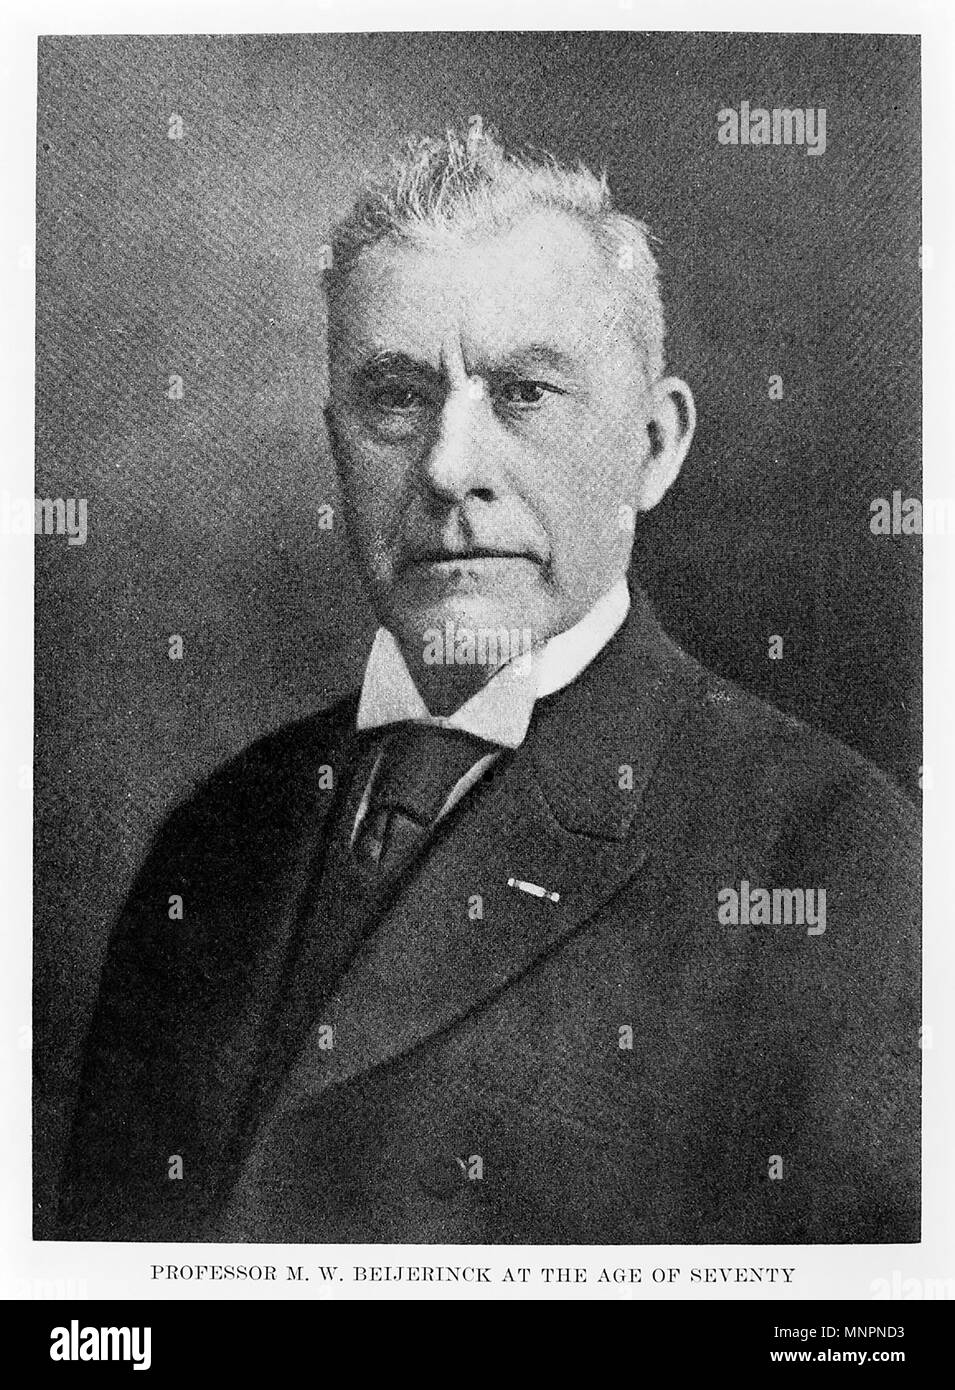 MARTINUS BEIJERINCK (1851-1931) microbiologo olandese e botanico Foto Stock